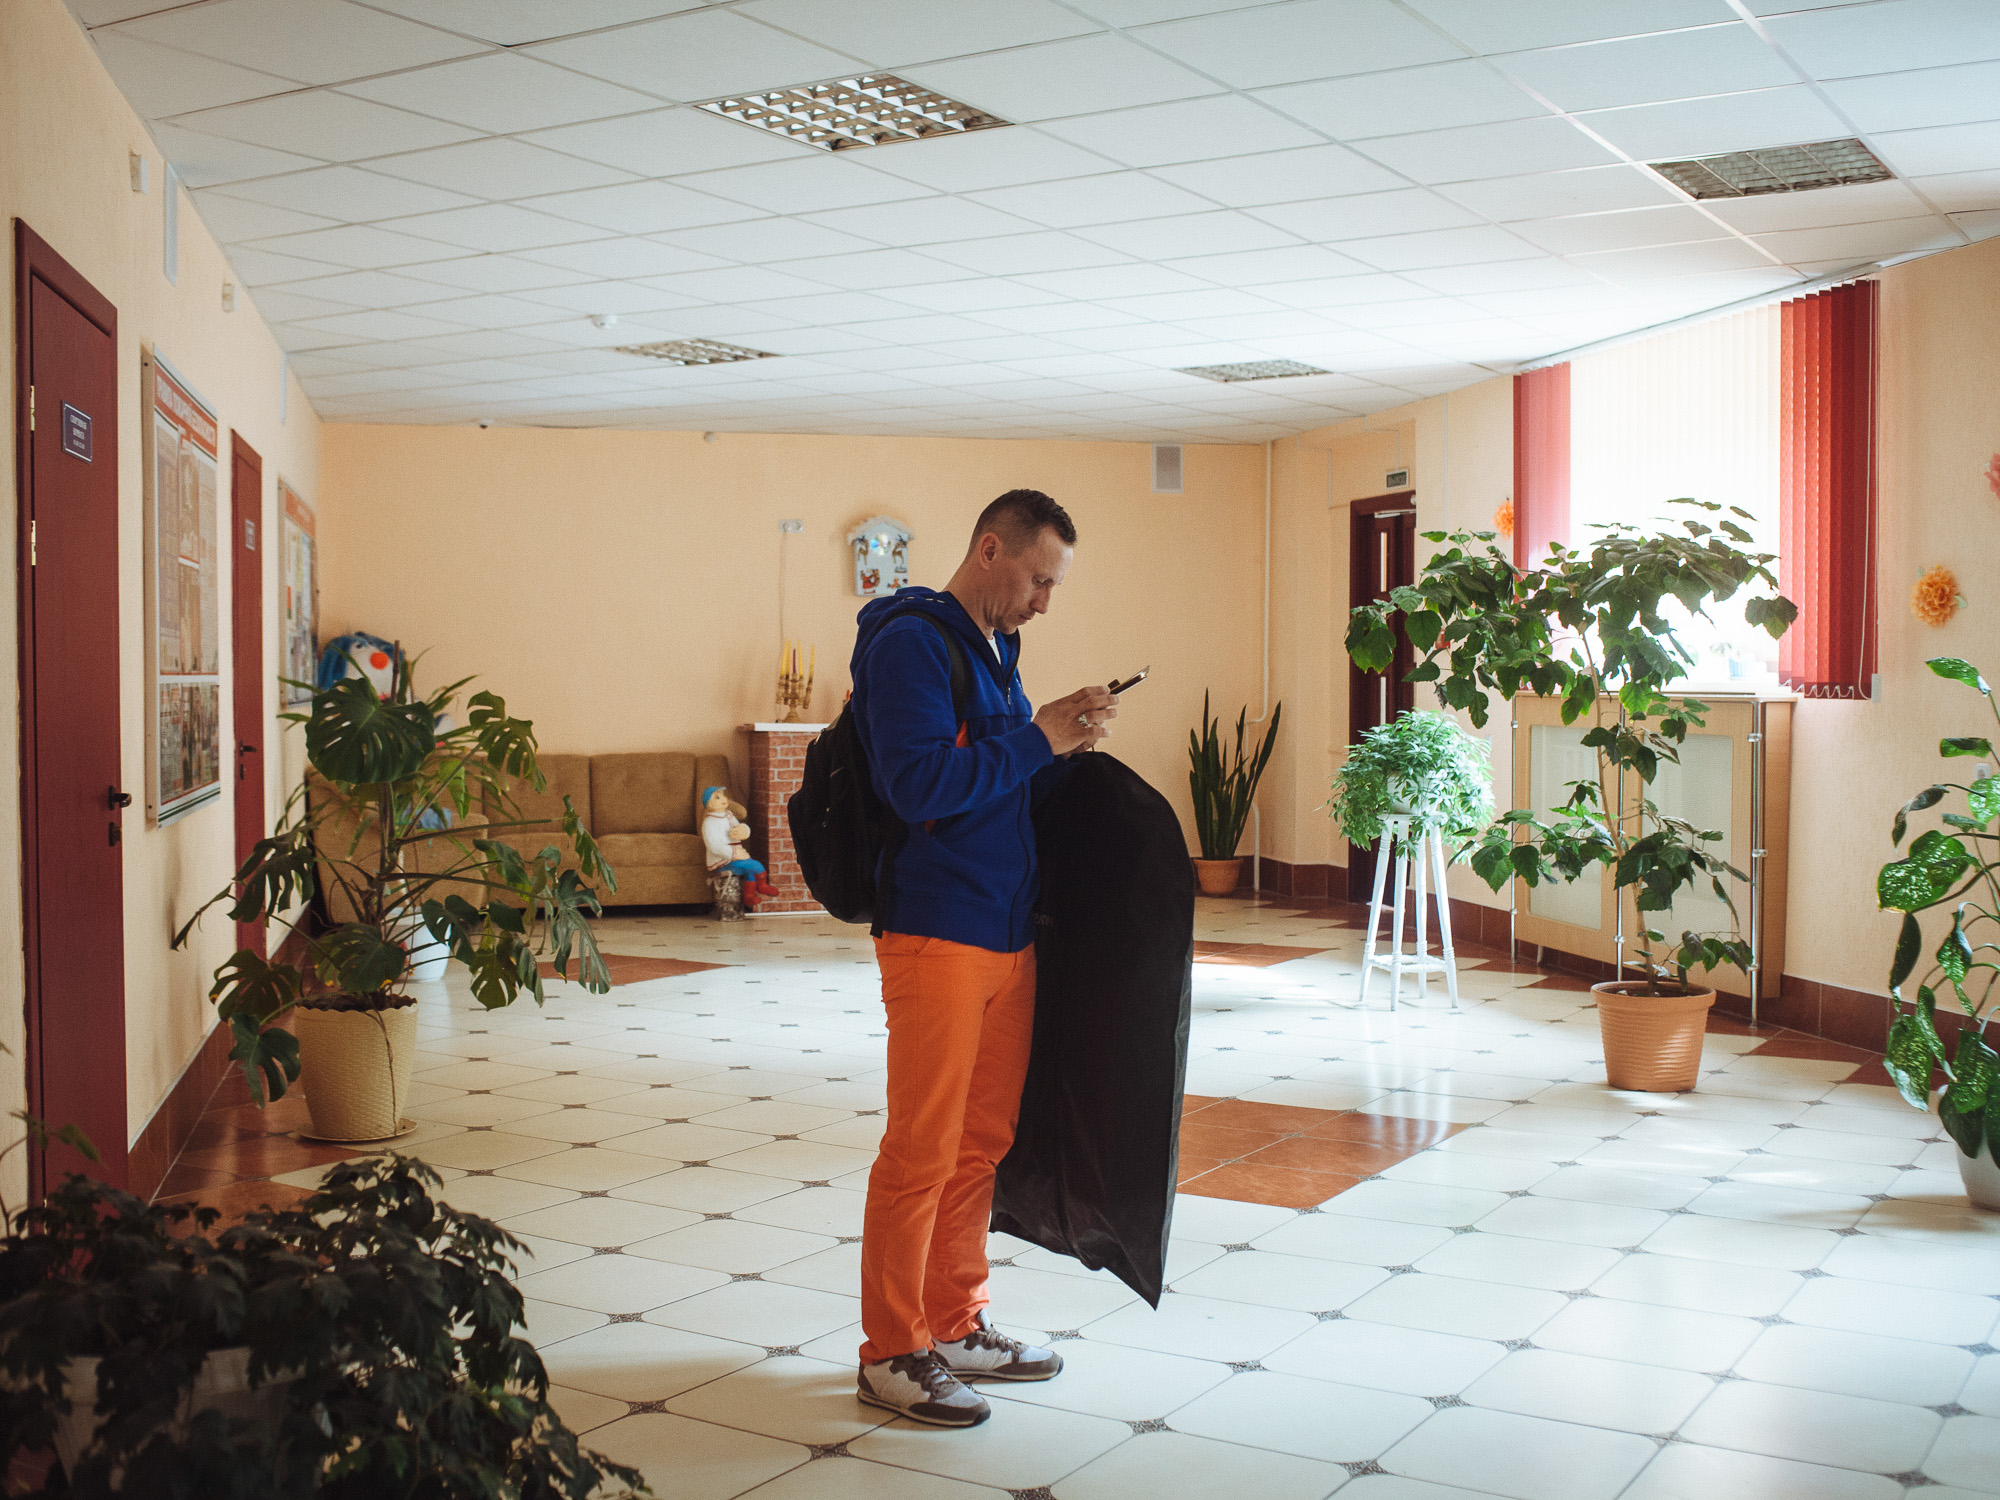 поэтусторону#: как Стас из Гродно спасает людей, выходящих из тюрьмы